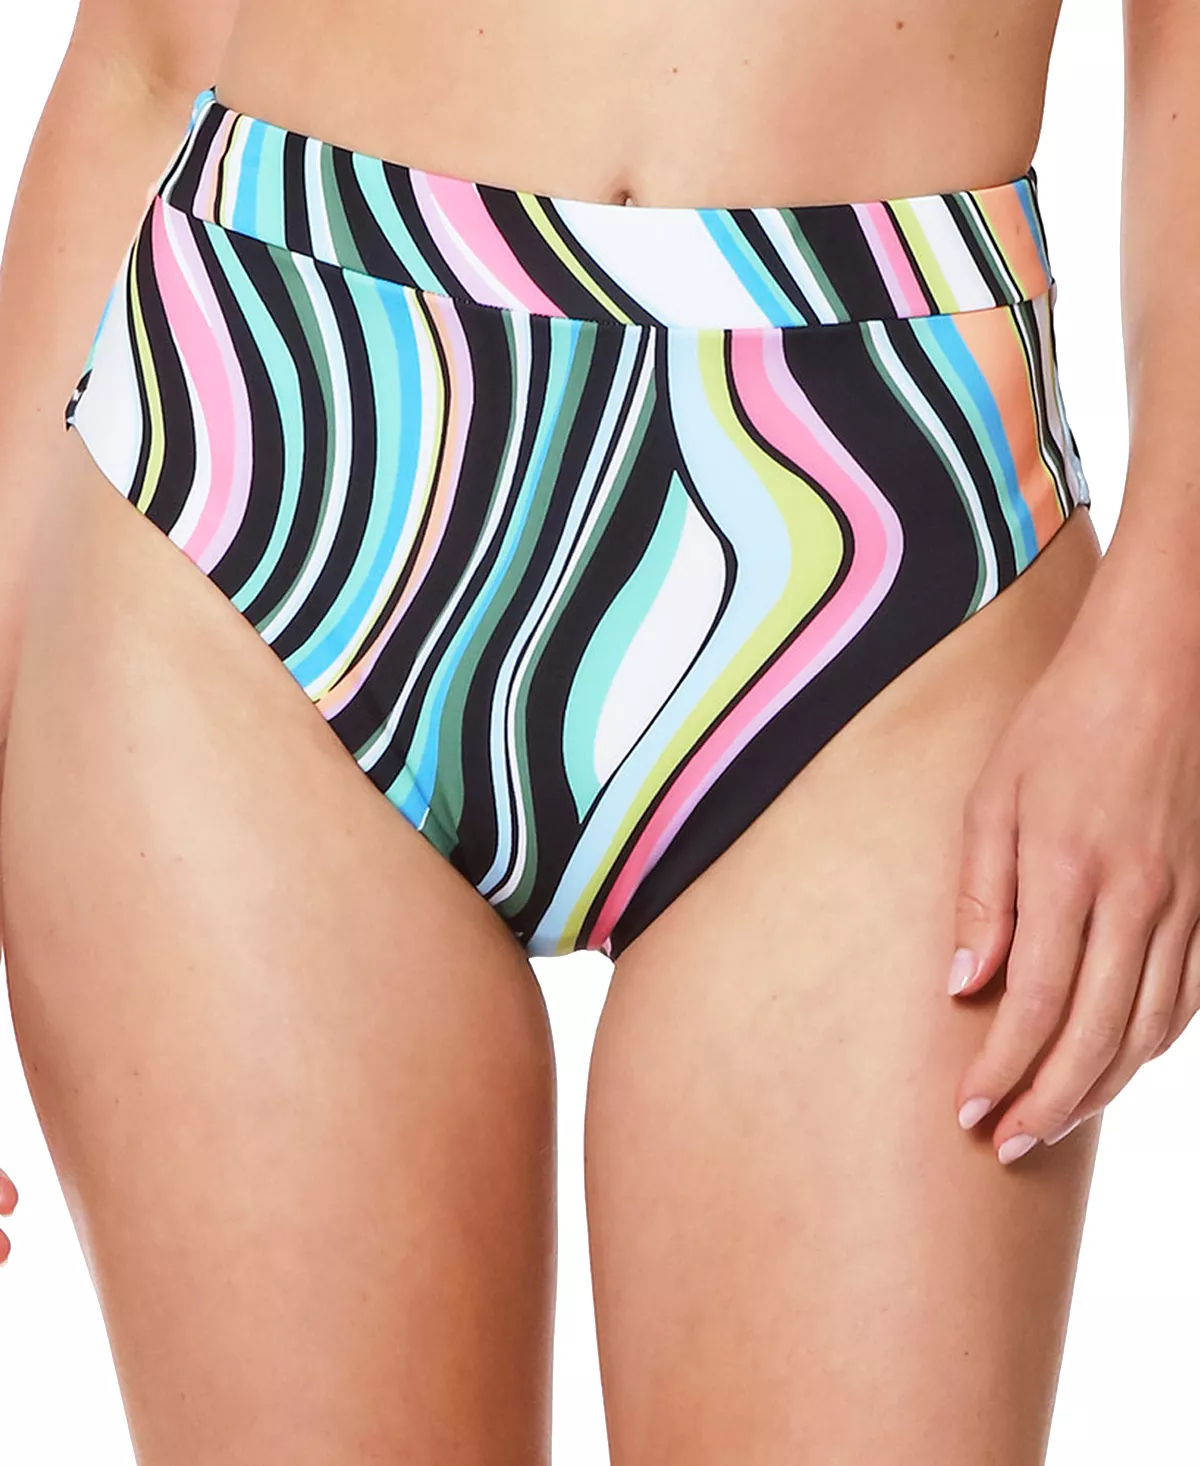 Primary image for Bikini Swim Bottoms Wavy Stripe Size XS SANCTUARY $59 - NWT